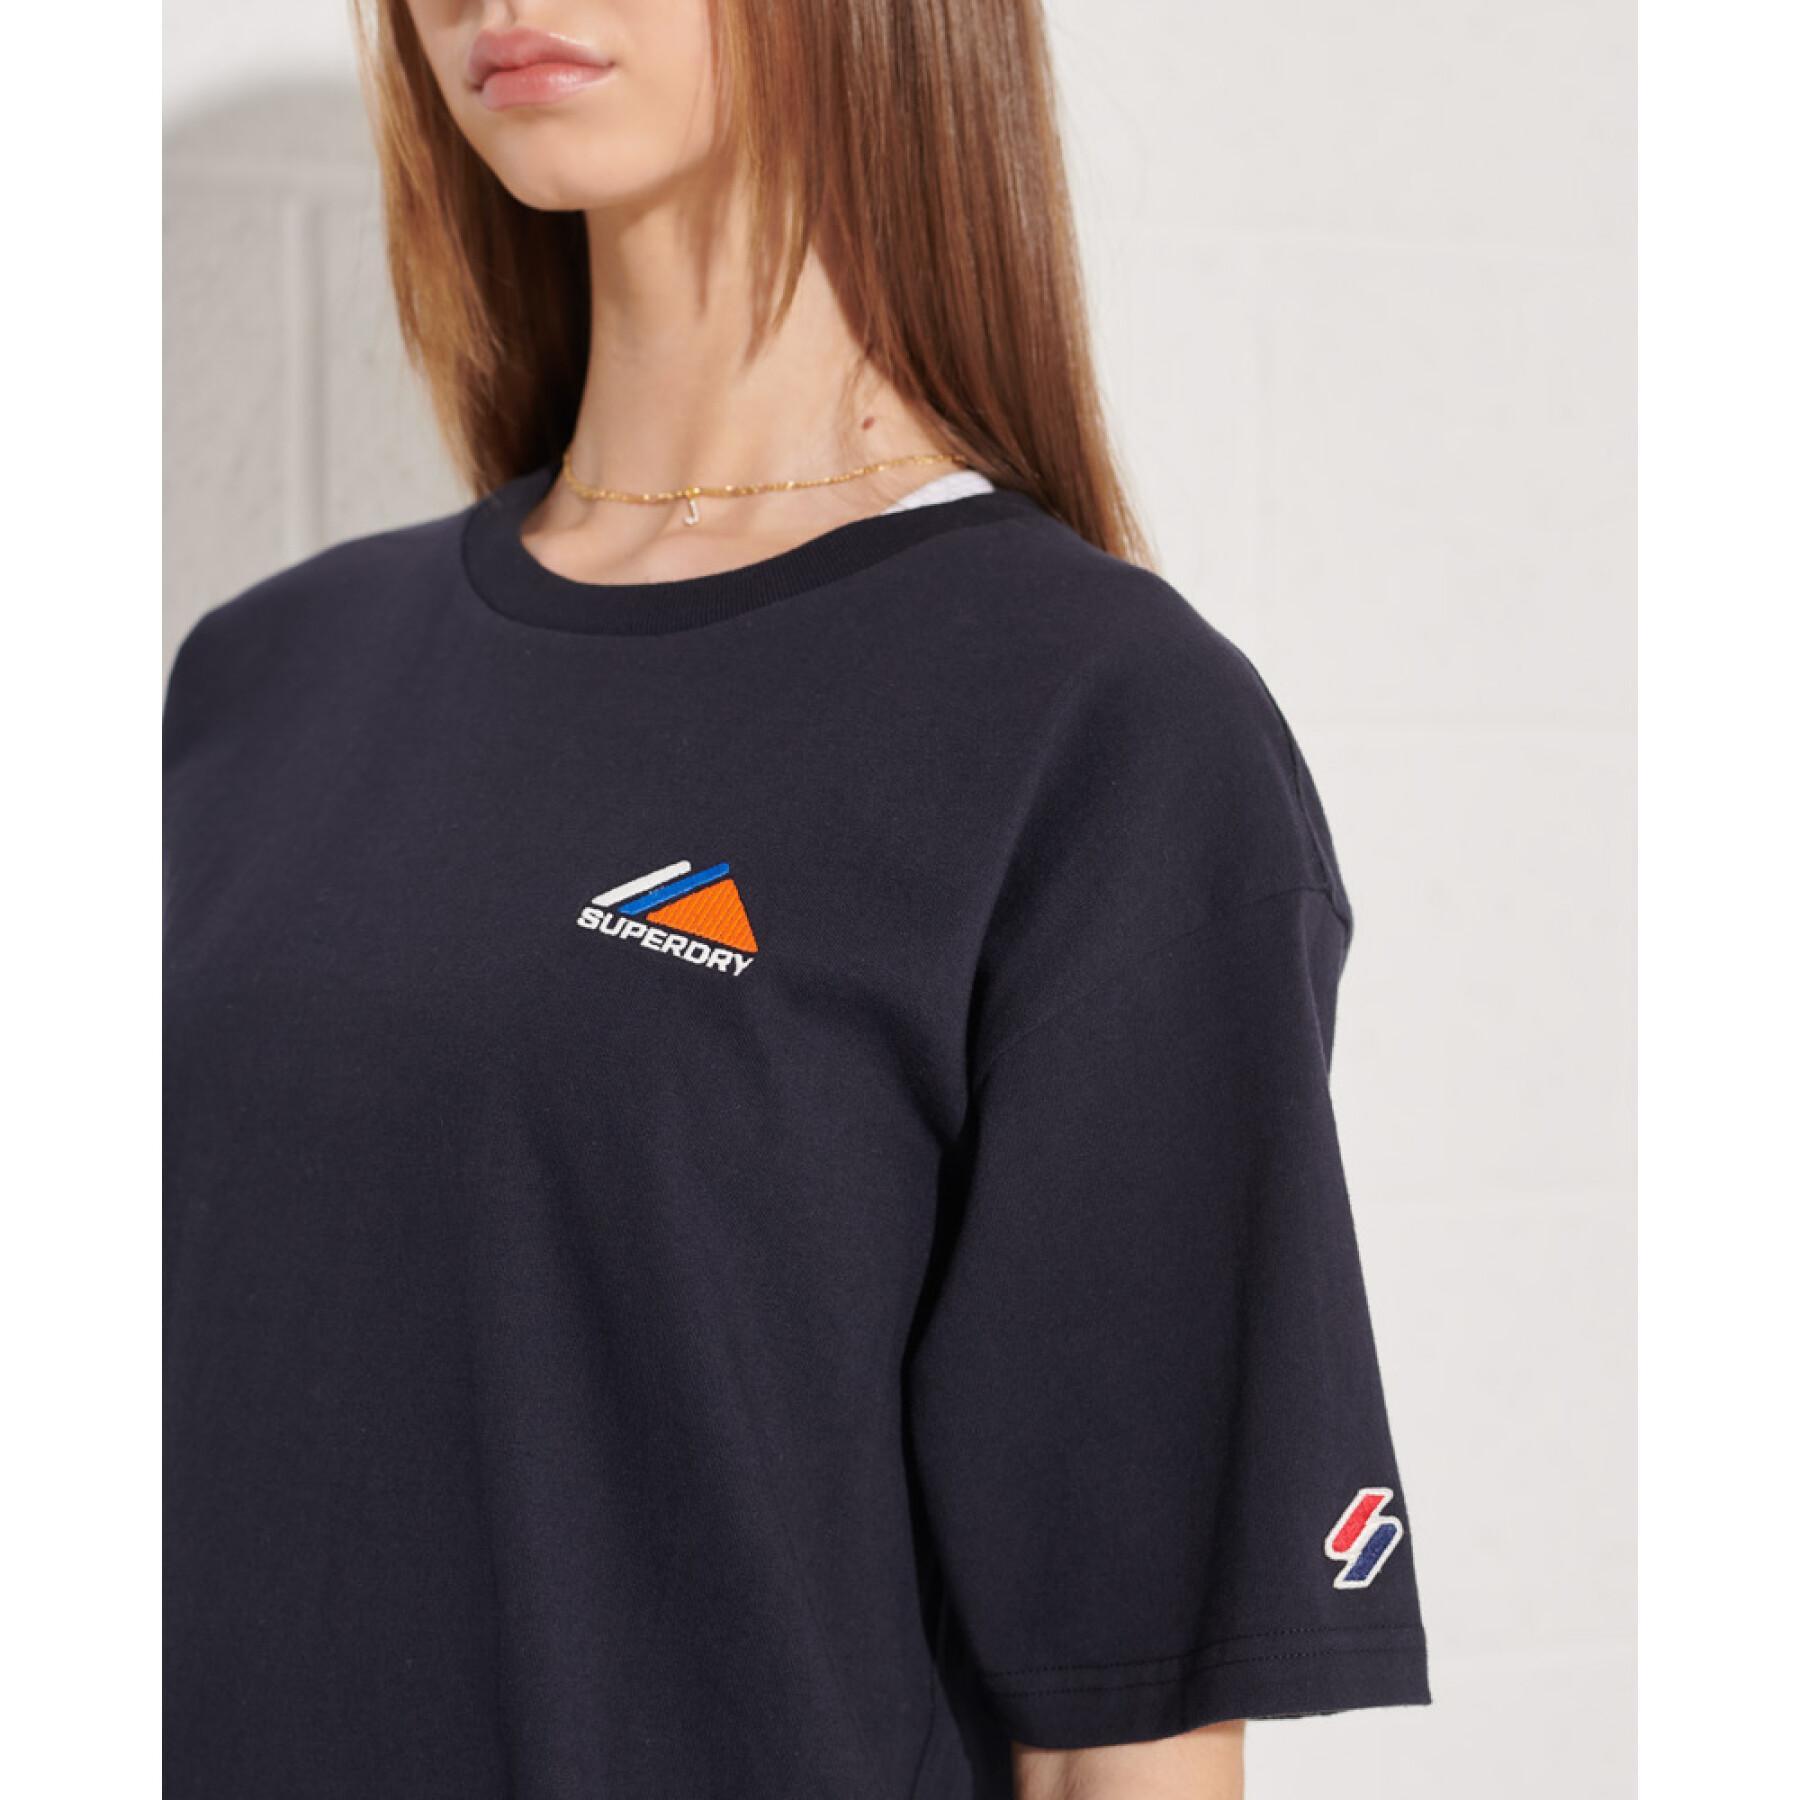 T-shirt brodé femme Superdry Mountain Sport